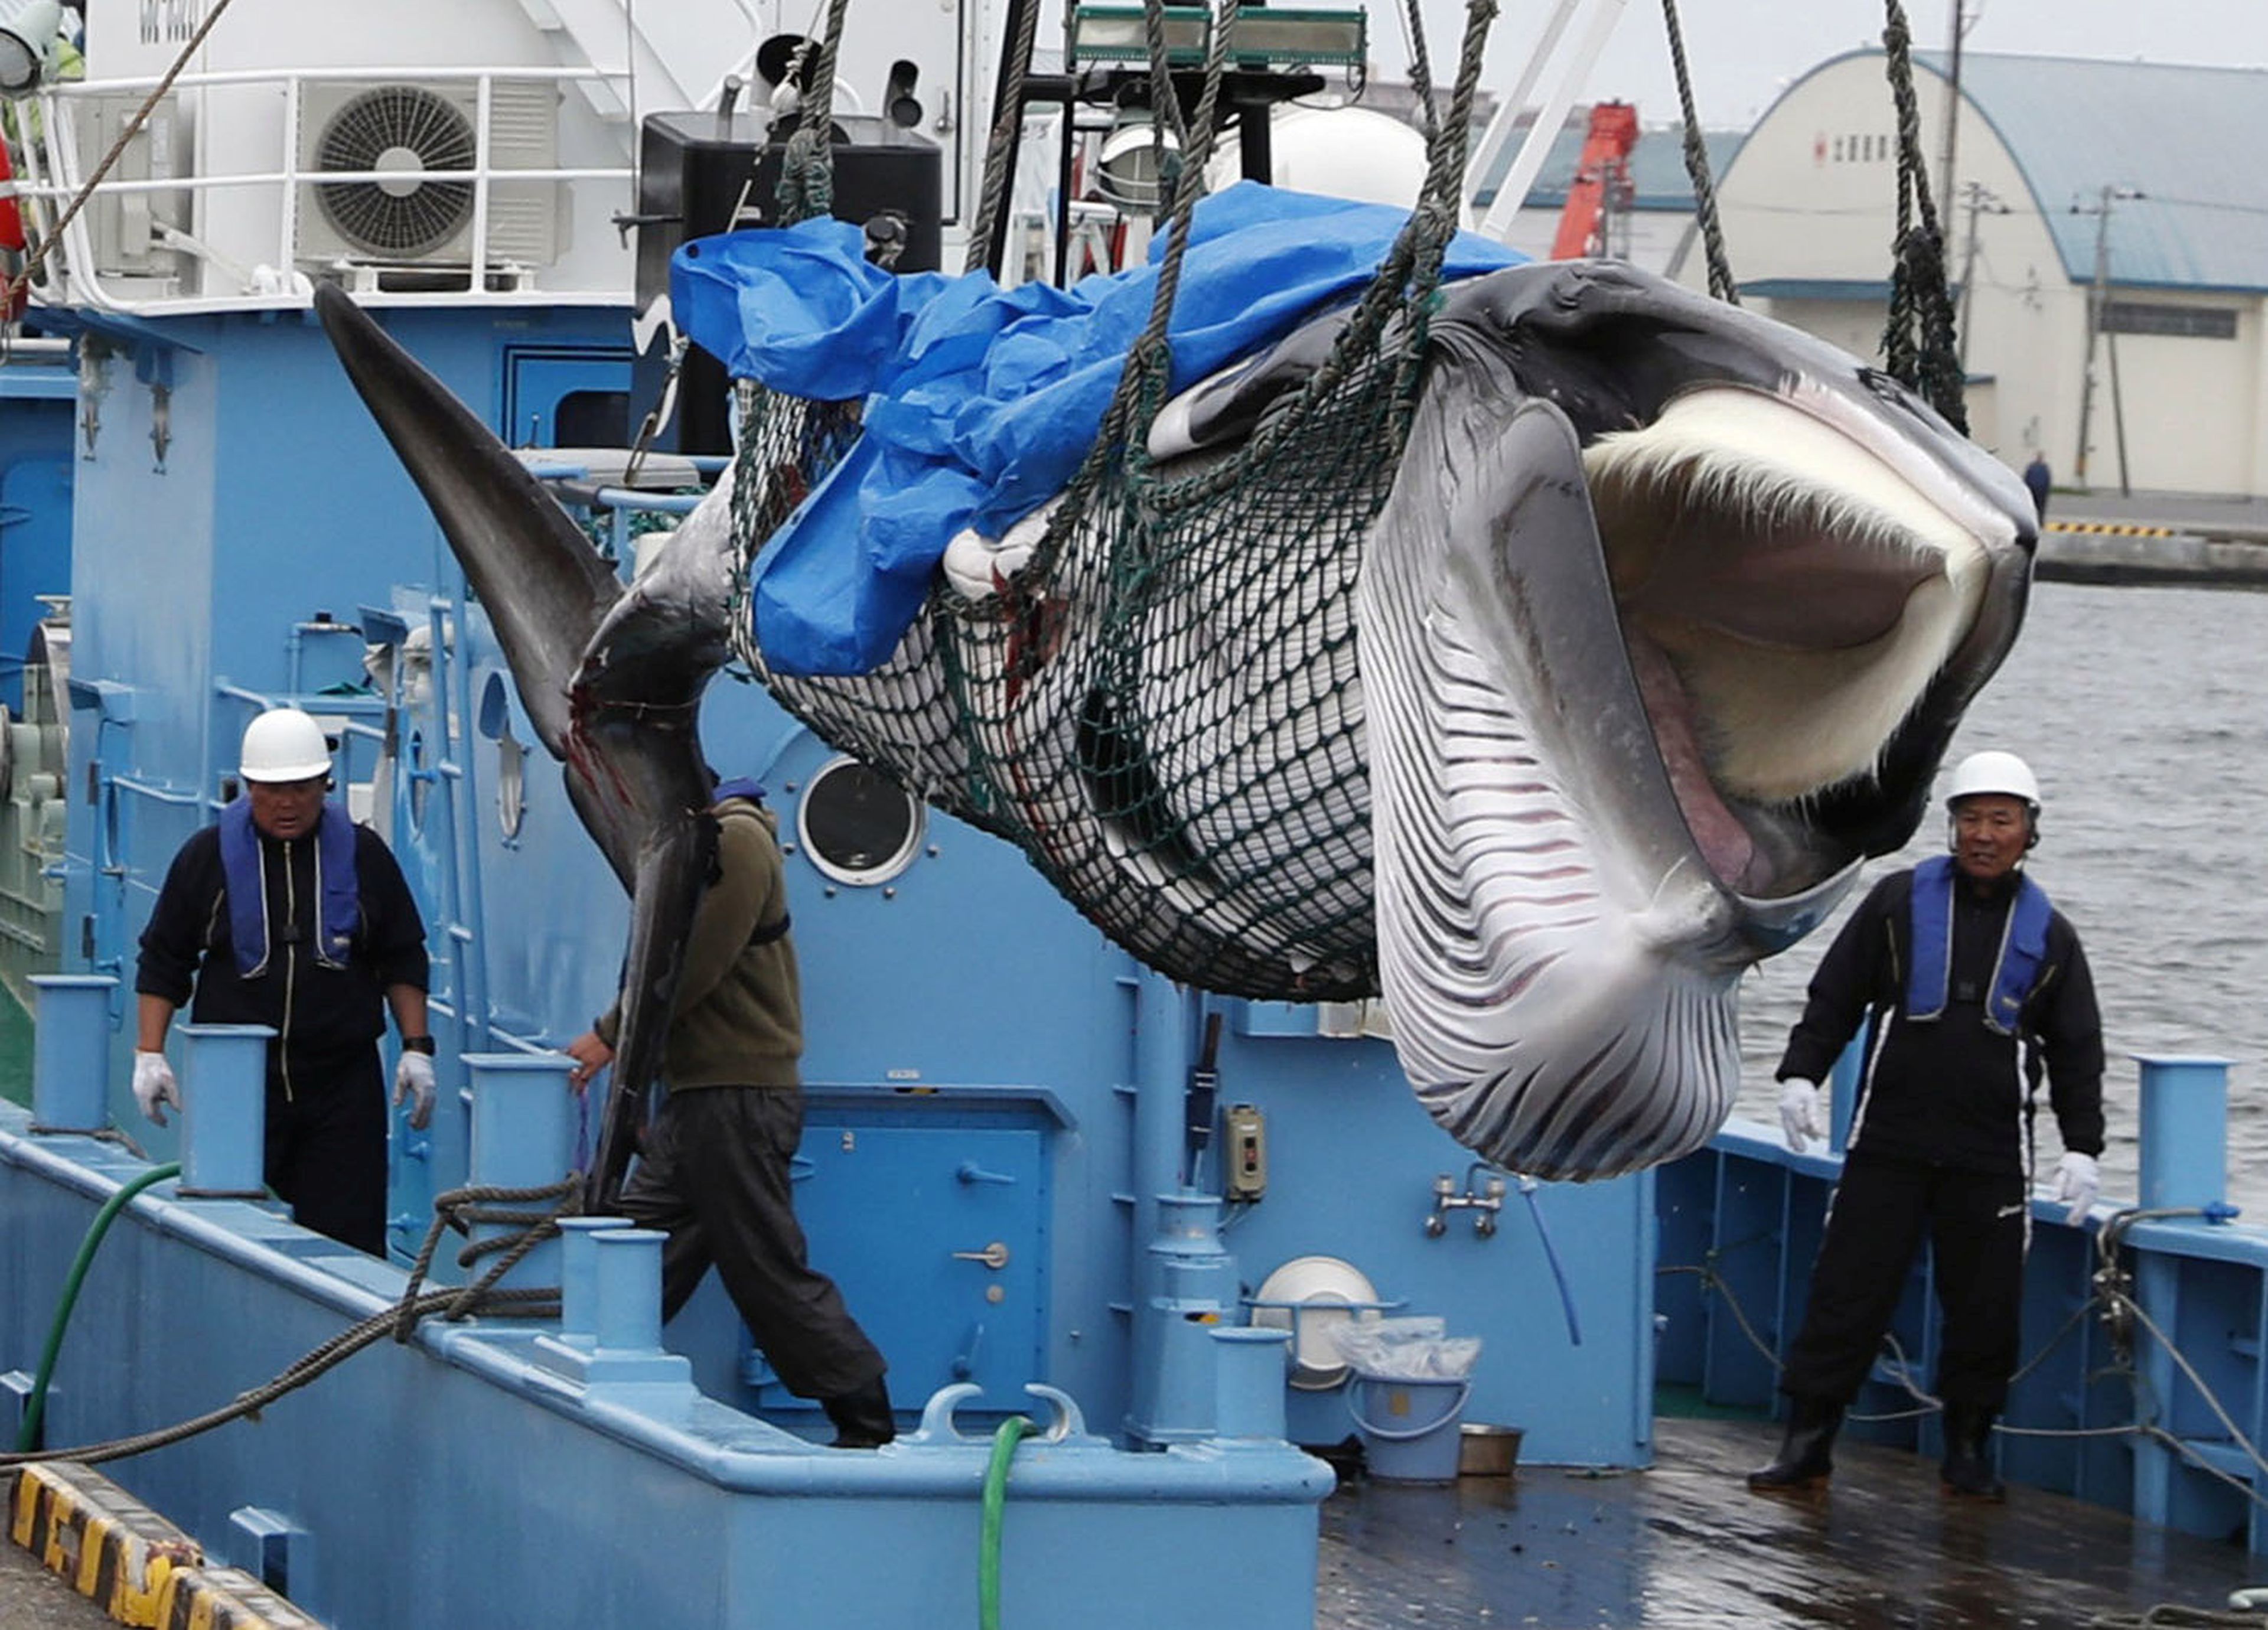 Japón ha reanudado la caza comercial de ballenas tras 31 años de moratoria.